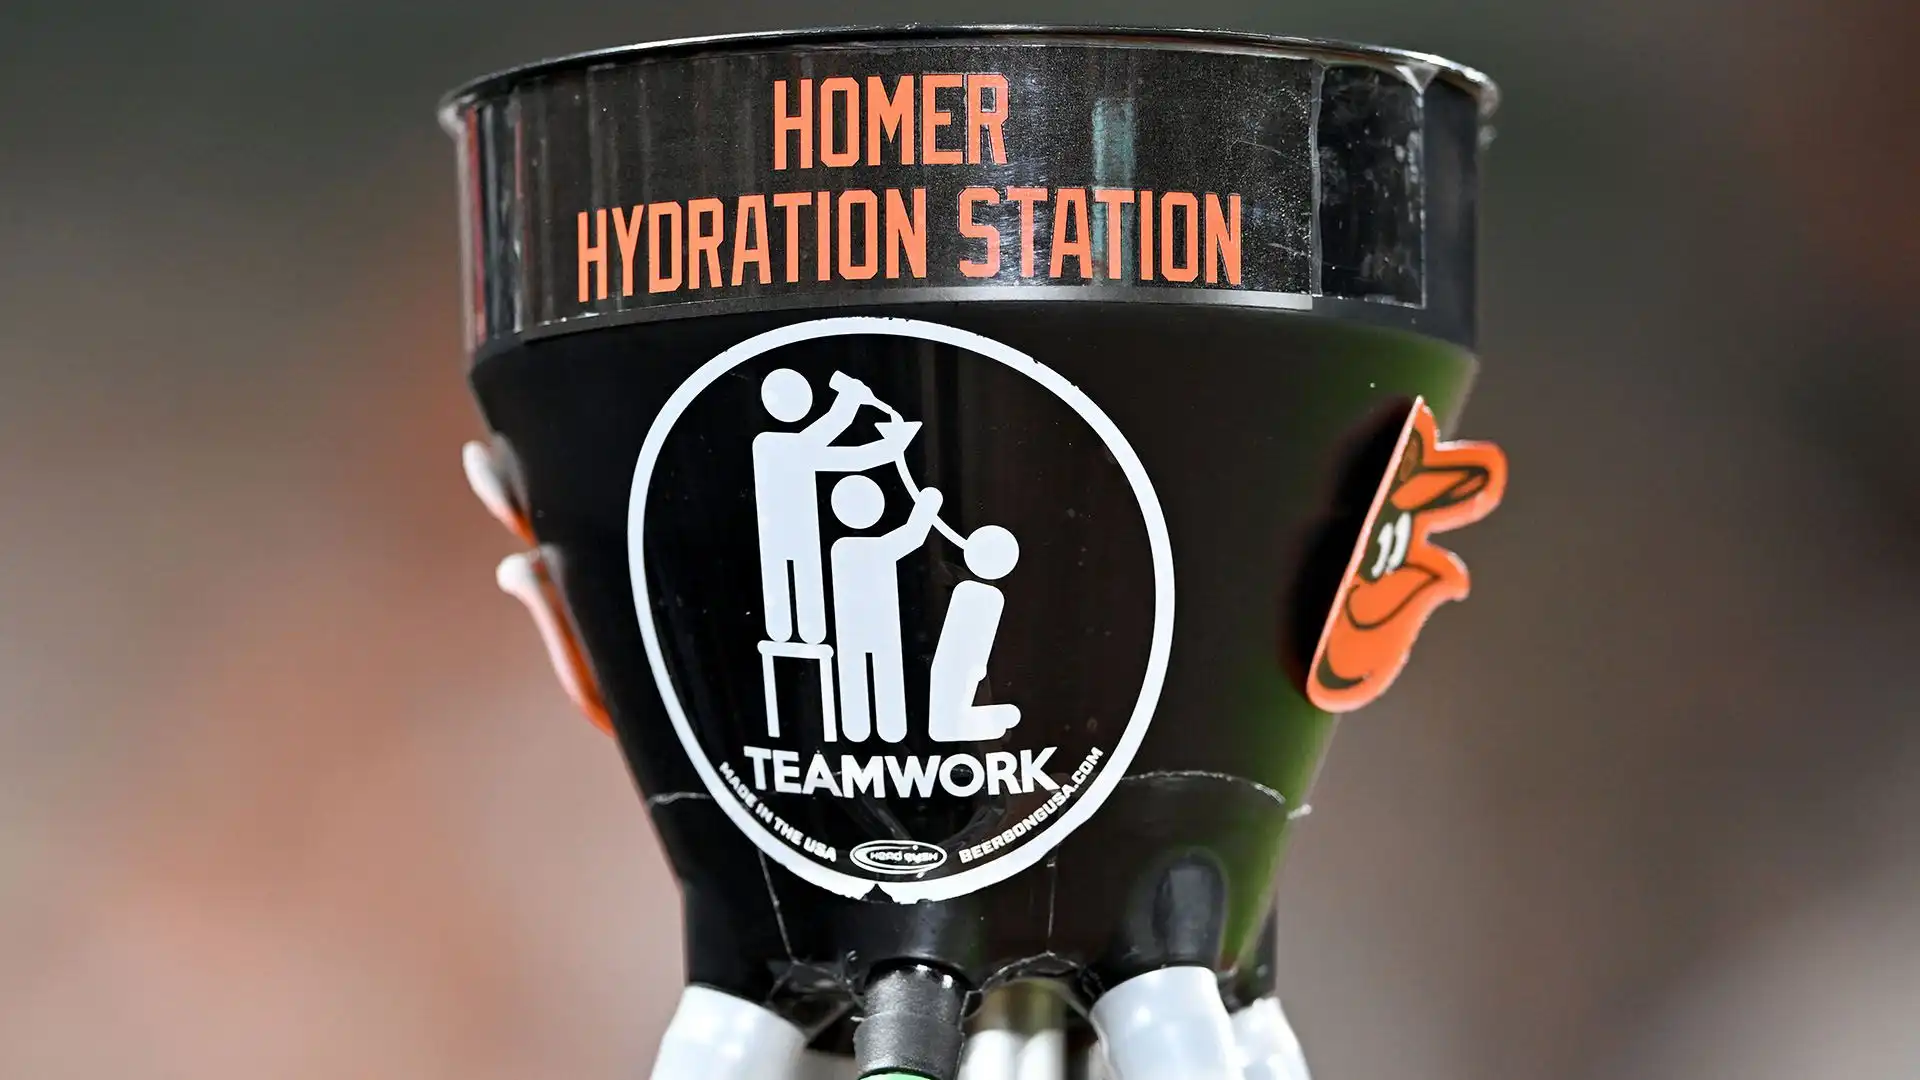 Secondo gli ideatori, l'homer hydration station ha anche lo scopo di alimentare lo spirito di squadra